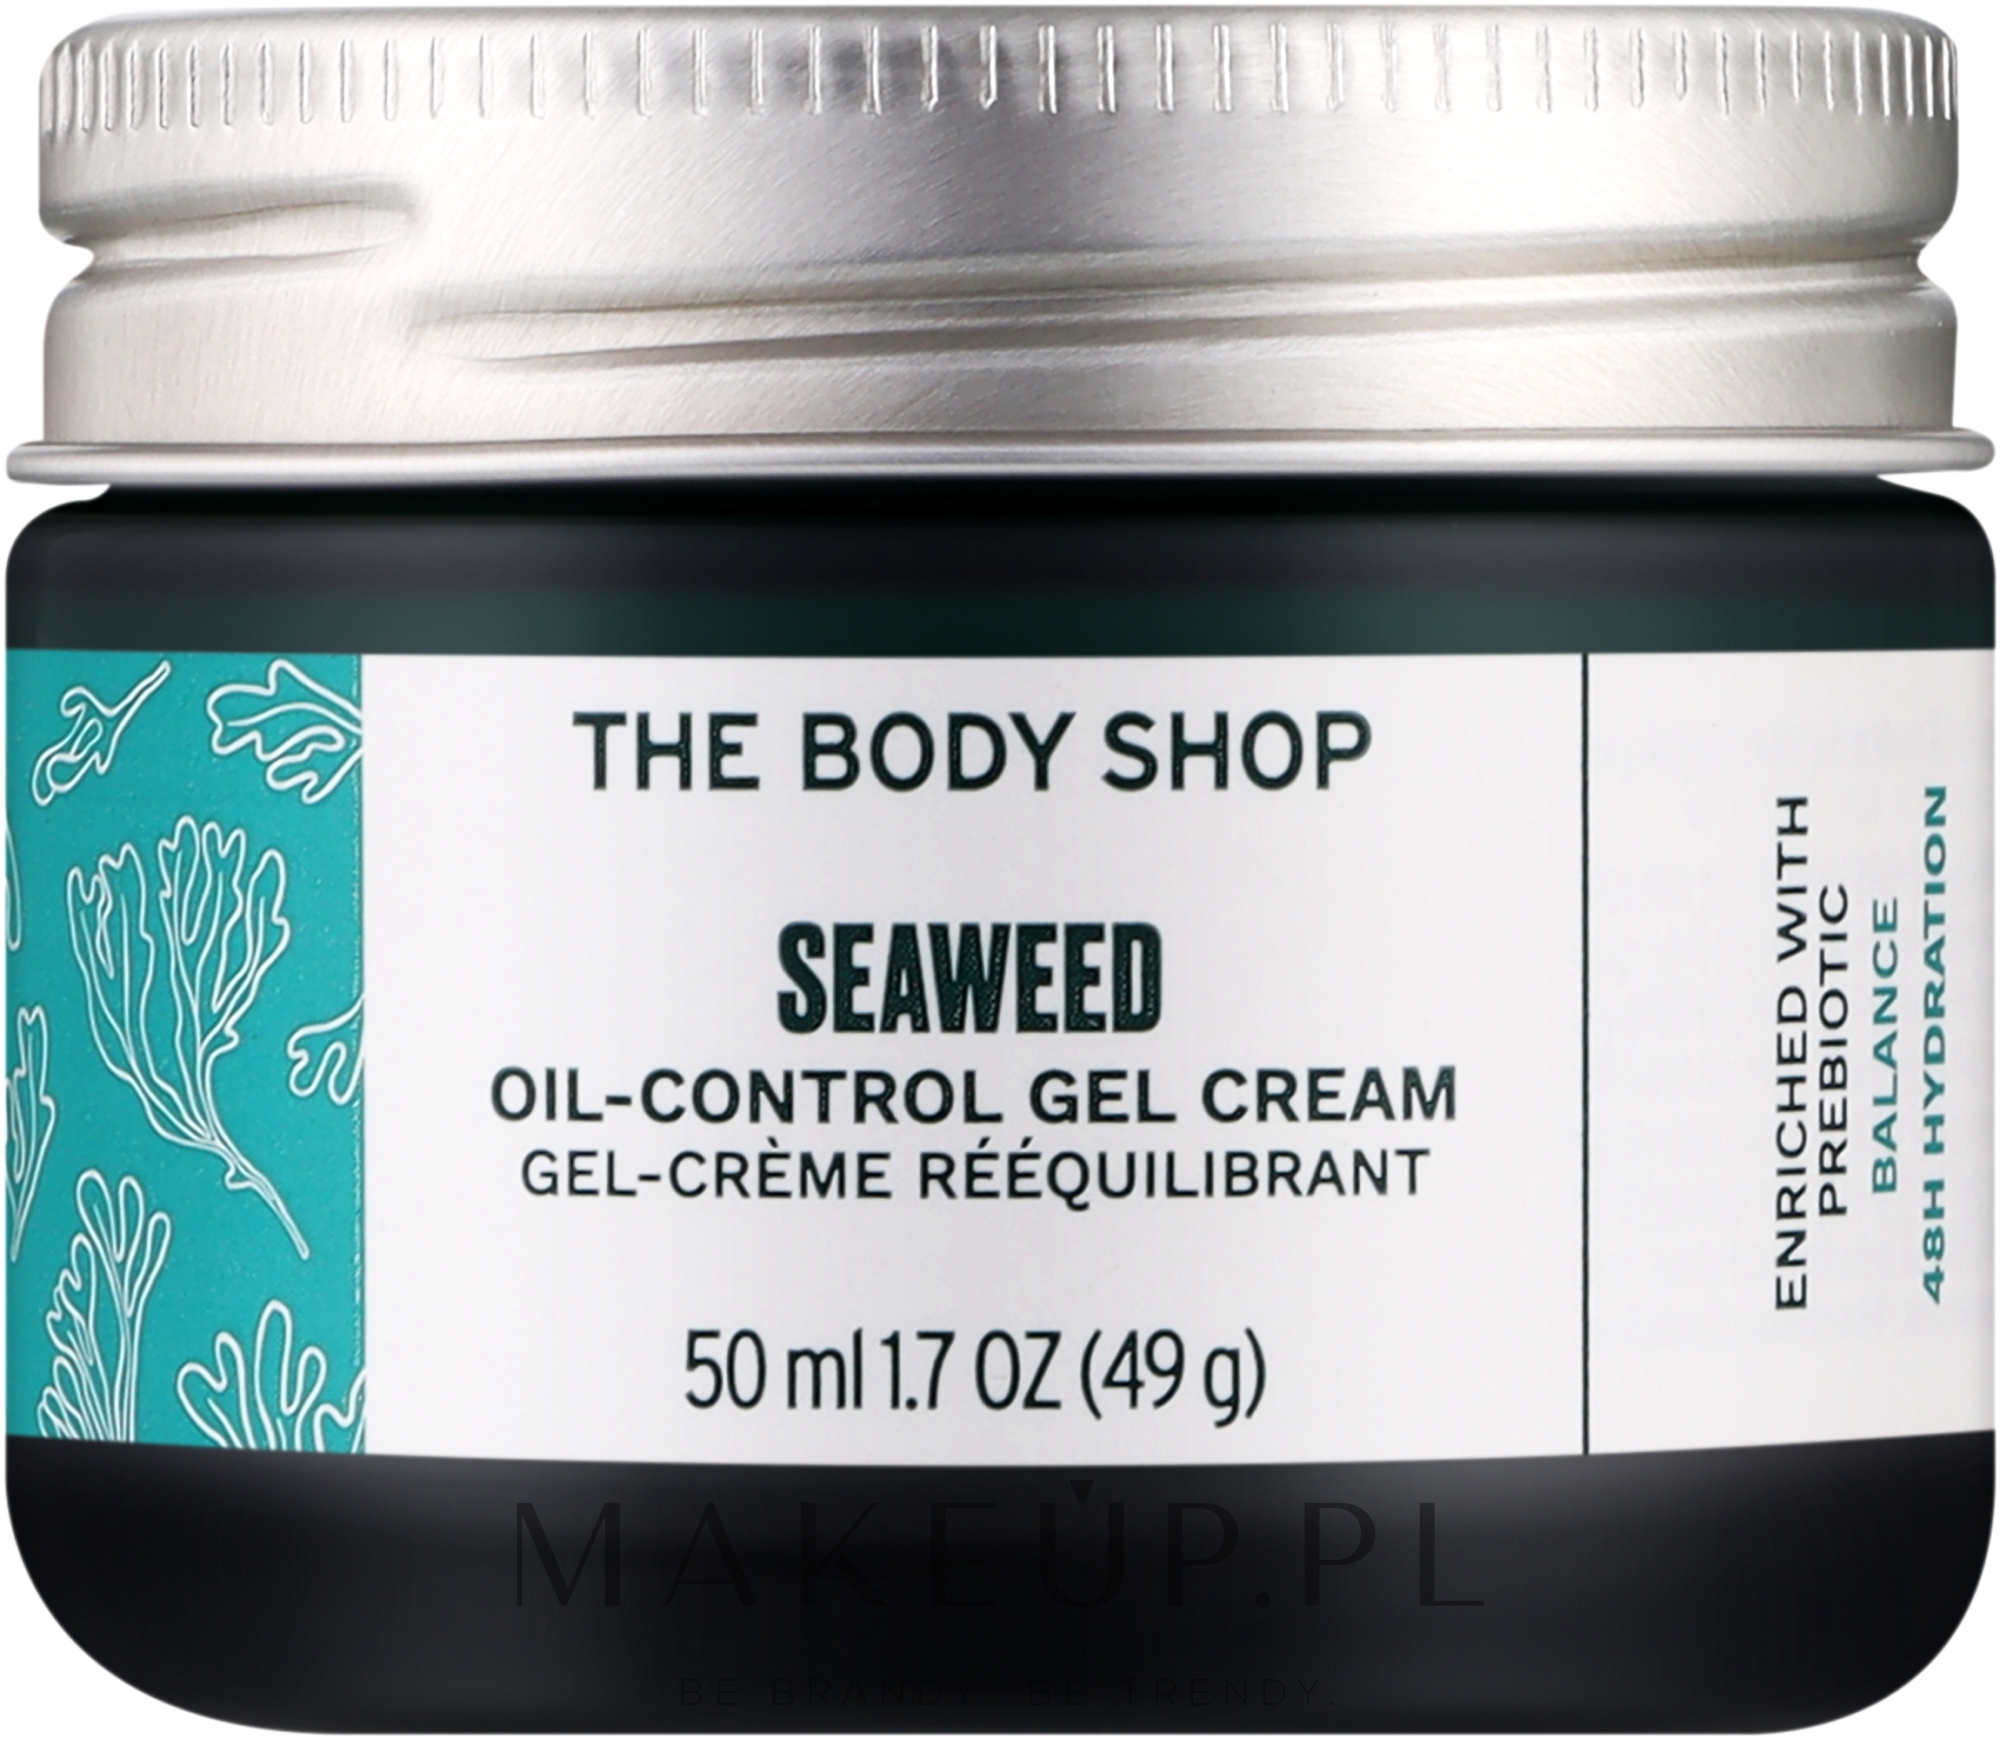 Żel-krem na dzień z wodorostami - The Body Shop Seaweed Oil-Control Gel Cream (szklany słoik) — Zdjęcie 50 ml